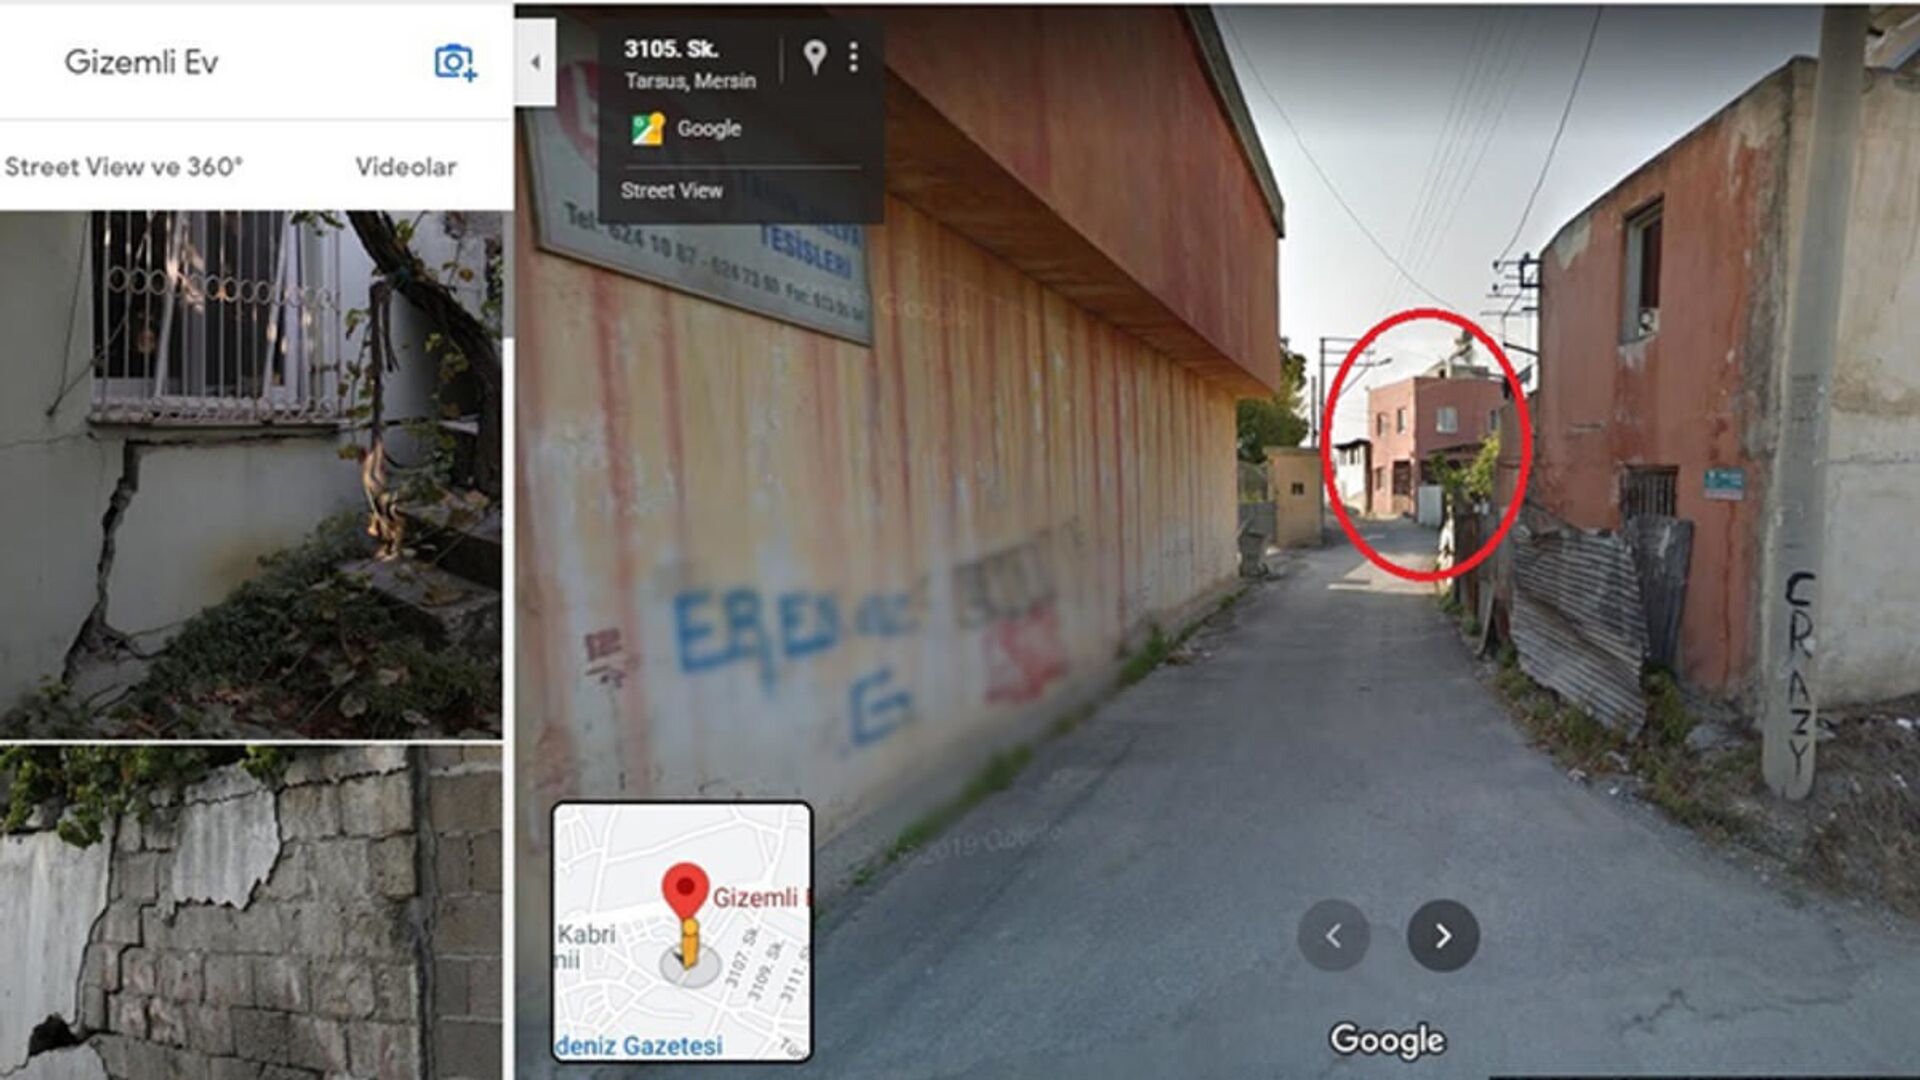 Mersin'deki 'gizemli ev' Google'ın haritalar hizmetinde işaretlendi - Sputnik Türkiye, 1920, 19.02.2021